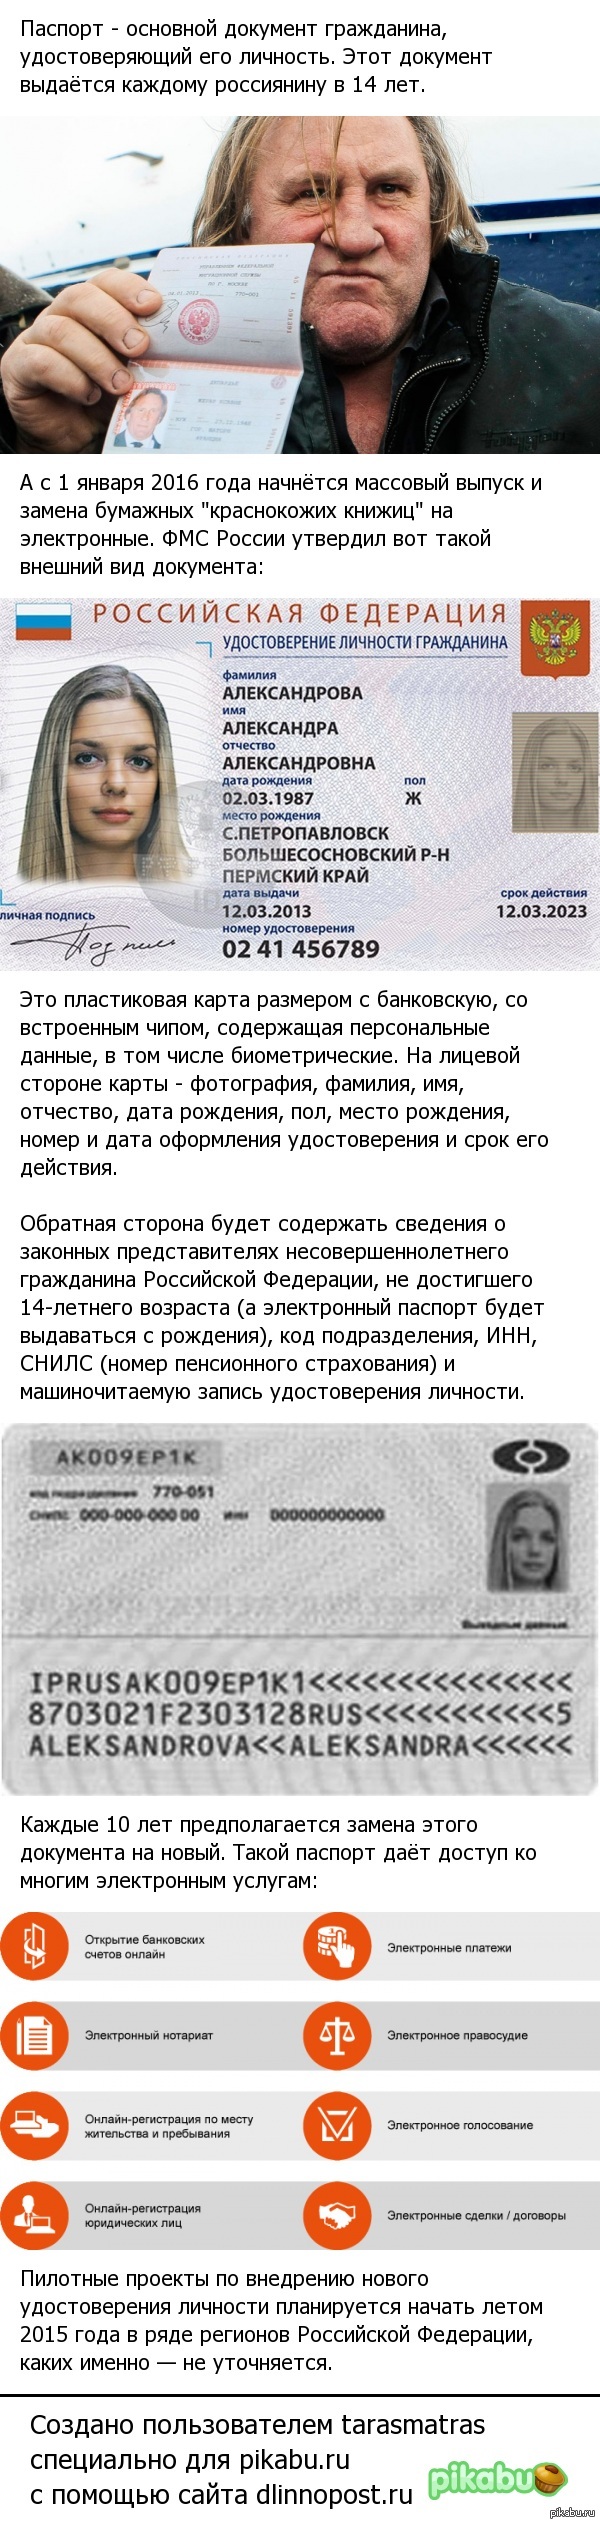 Новый паспорт гражданина России.   Россия, биометрический паспорт, длиннопост